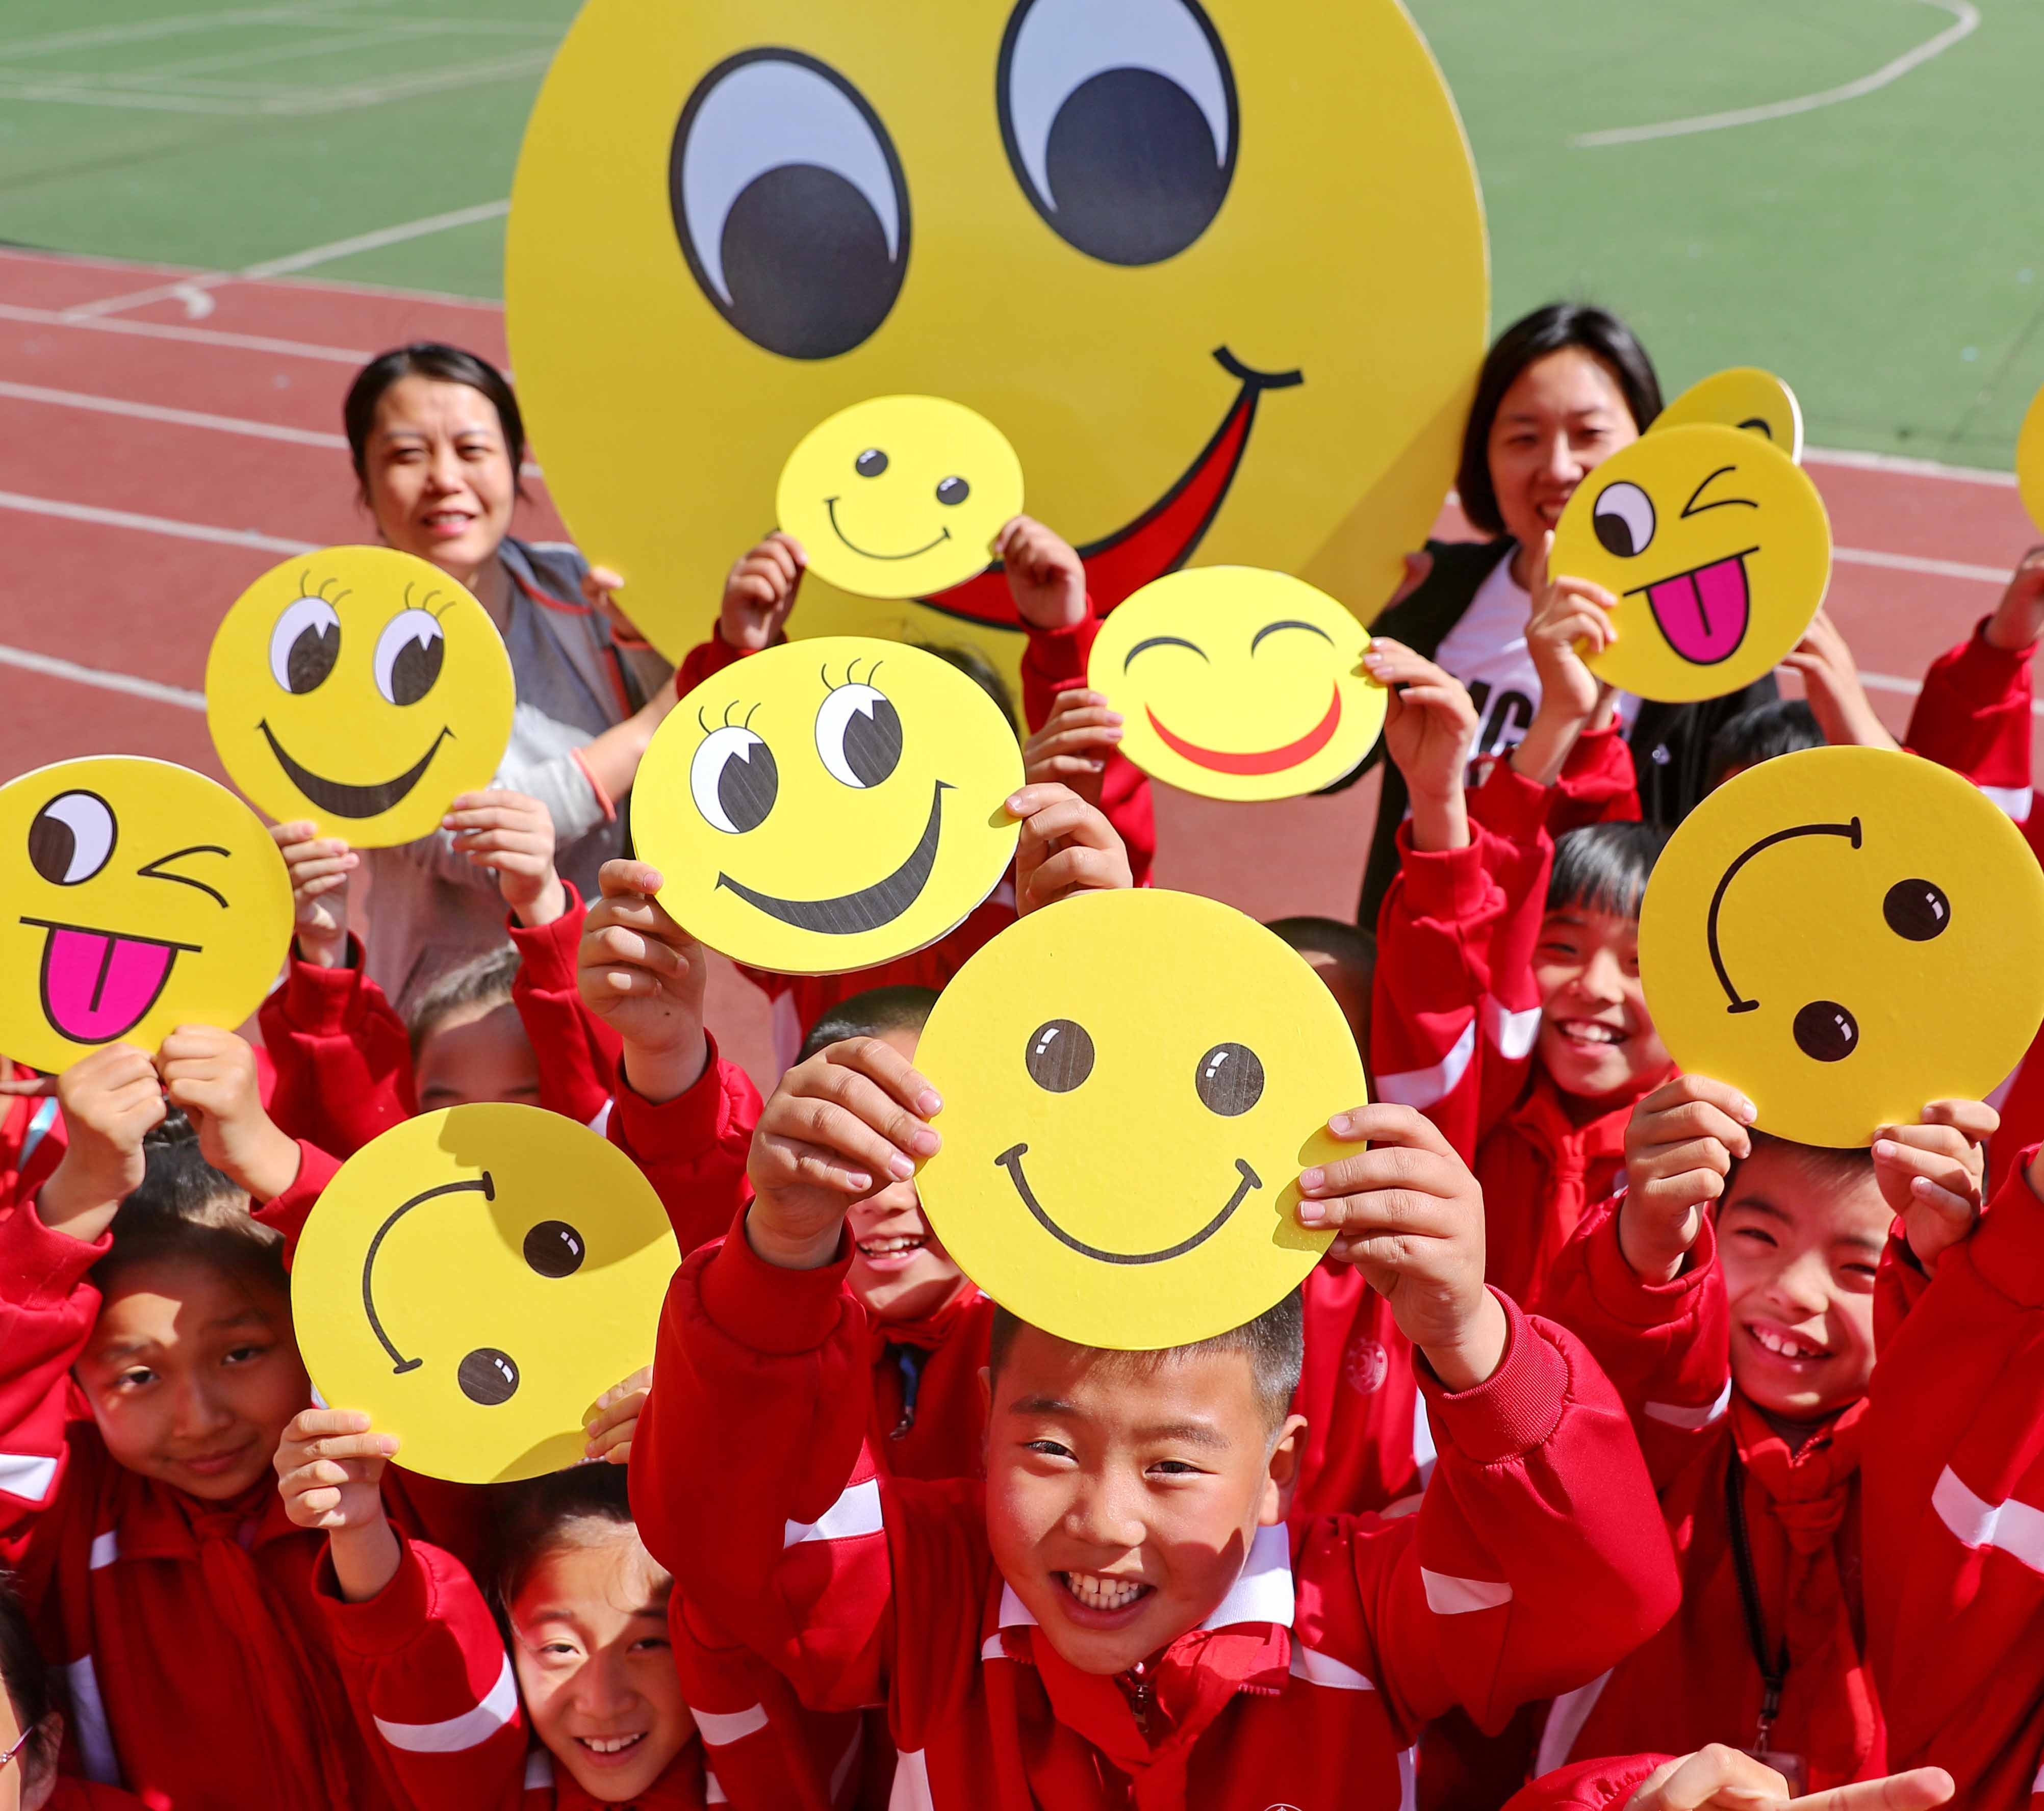 摄)当日,各地学校举办丰富多彩的微笑主题活动,迎接5月8日世界微笑